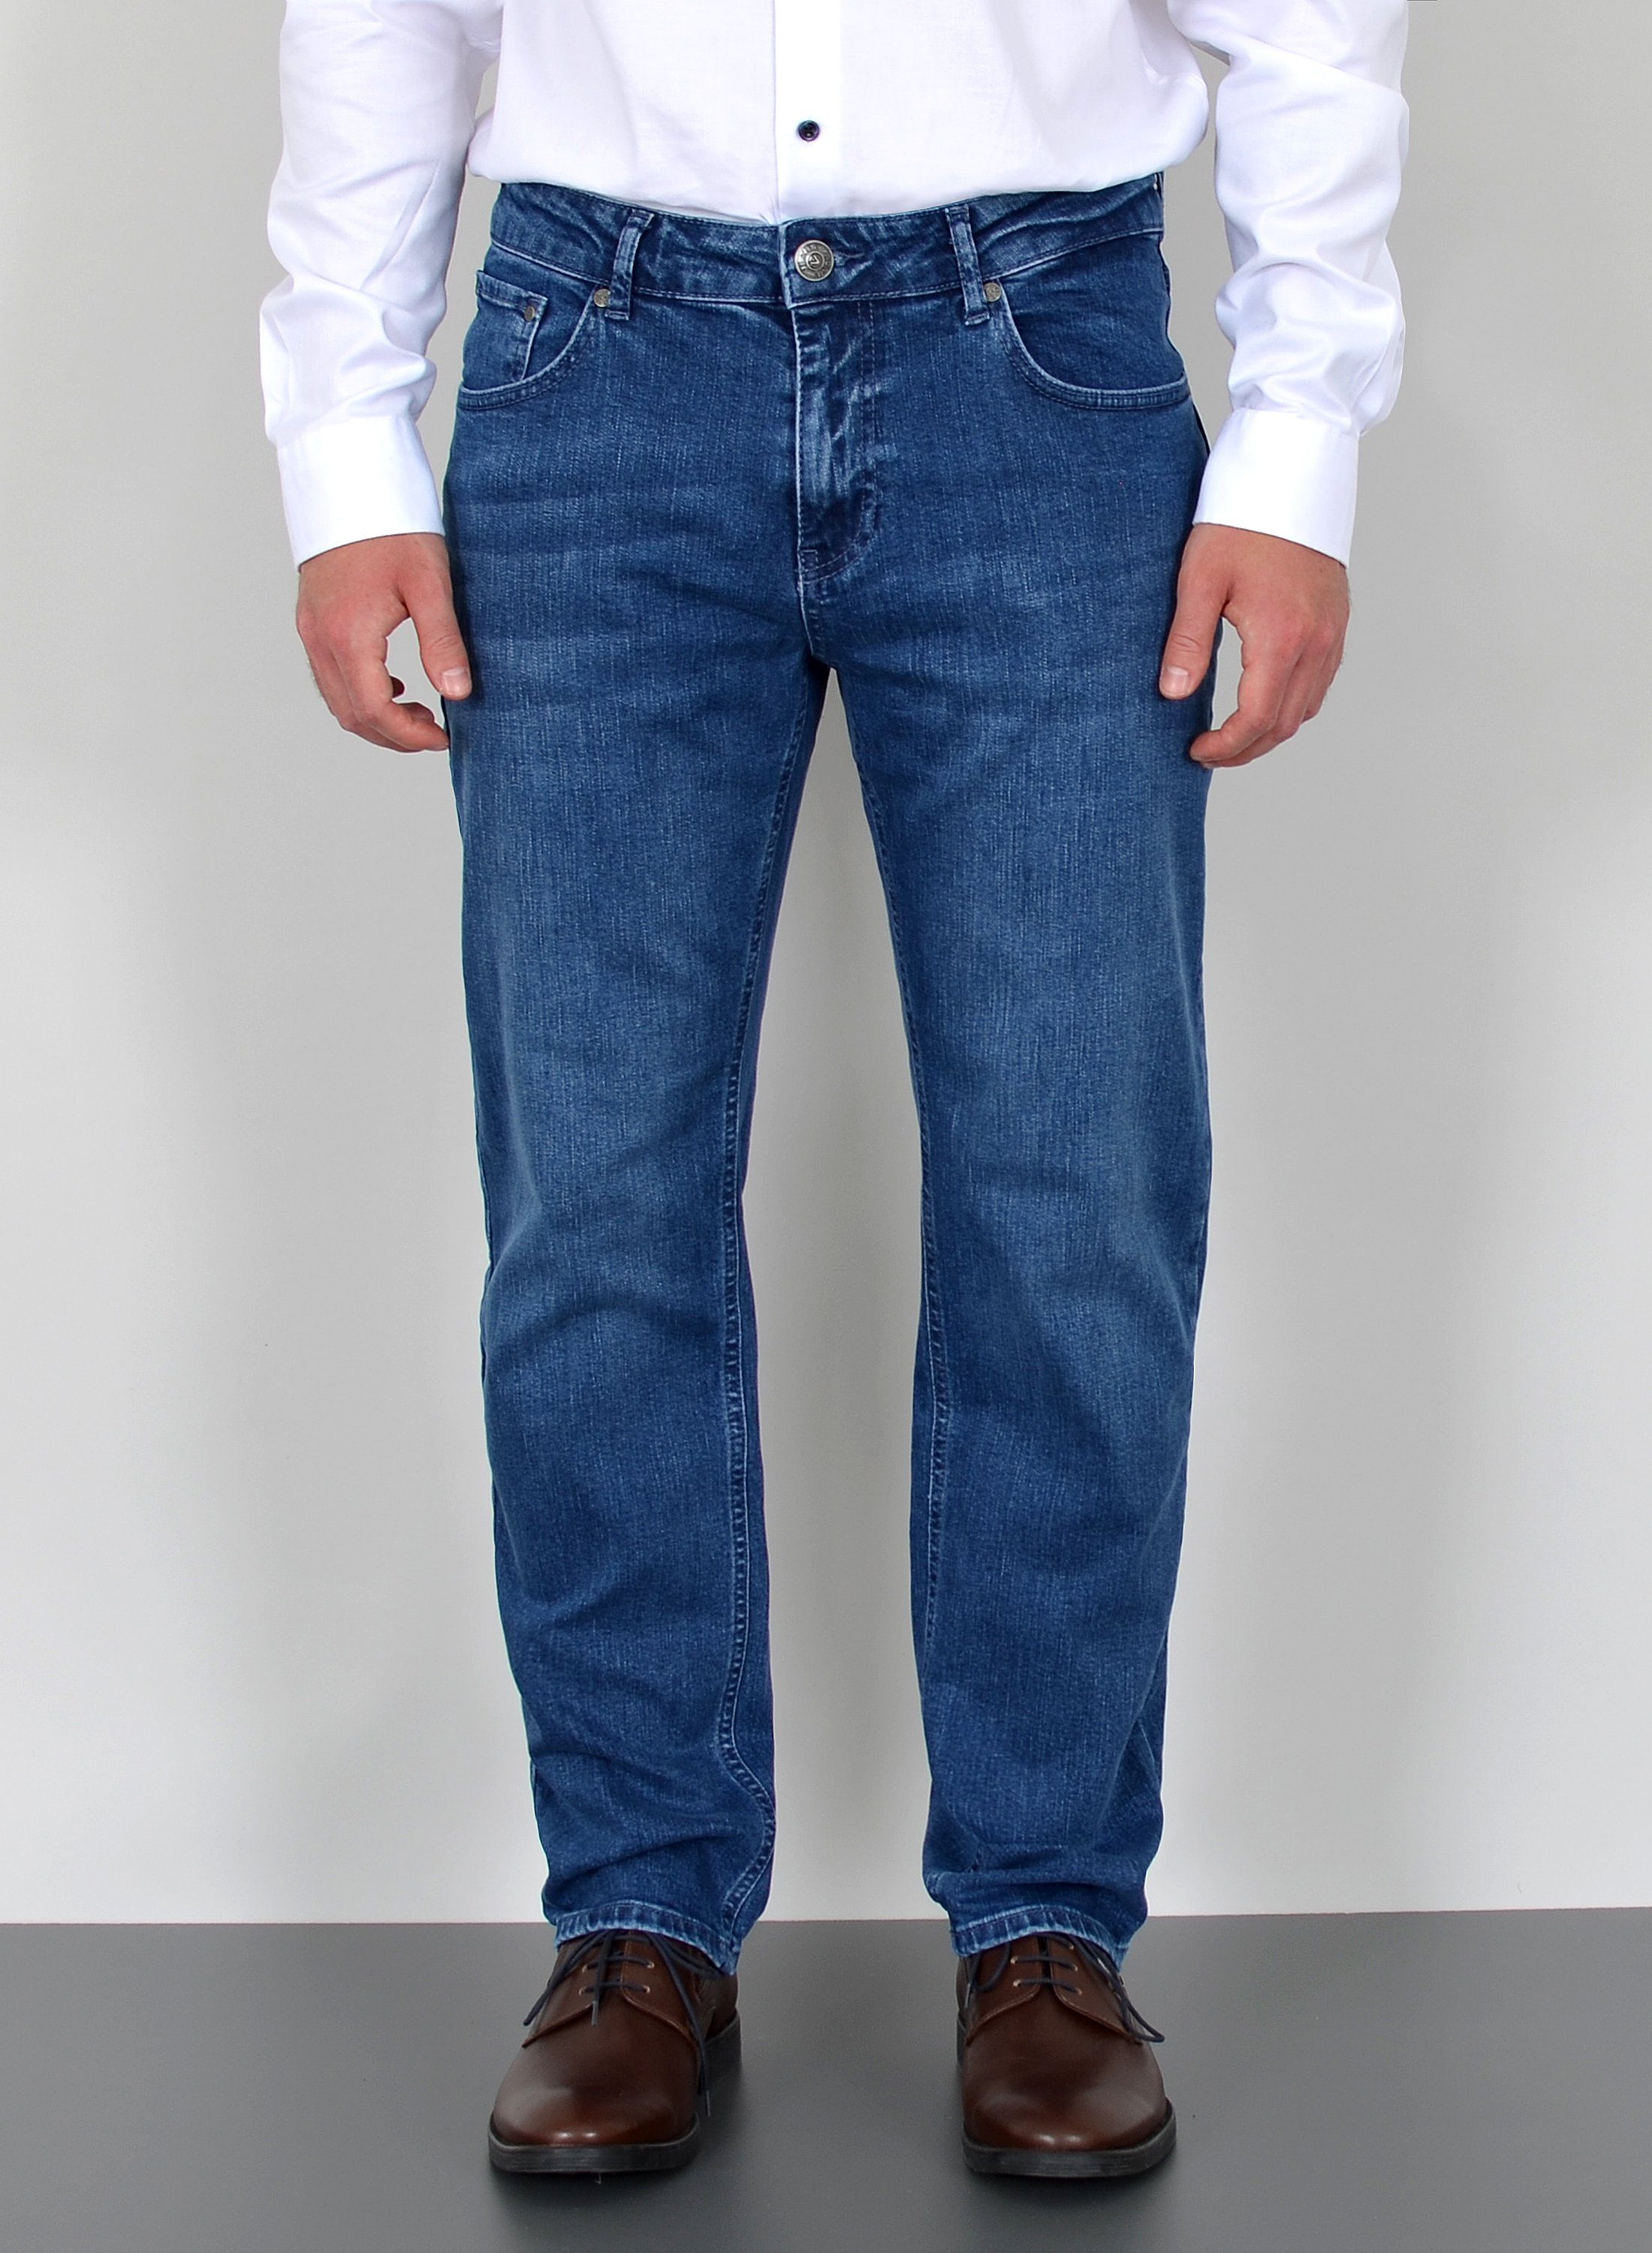 Herren Stretch Jeans online kaufen | OTTO